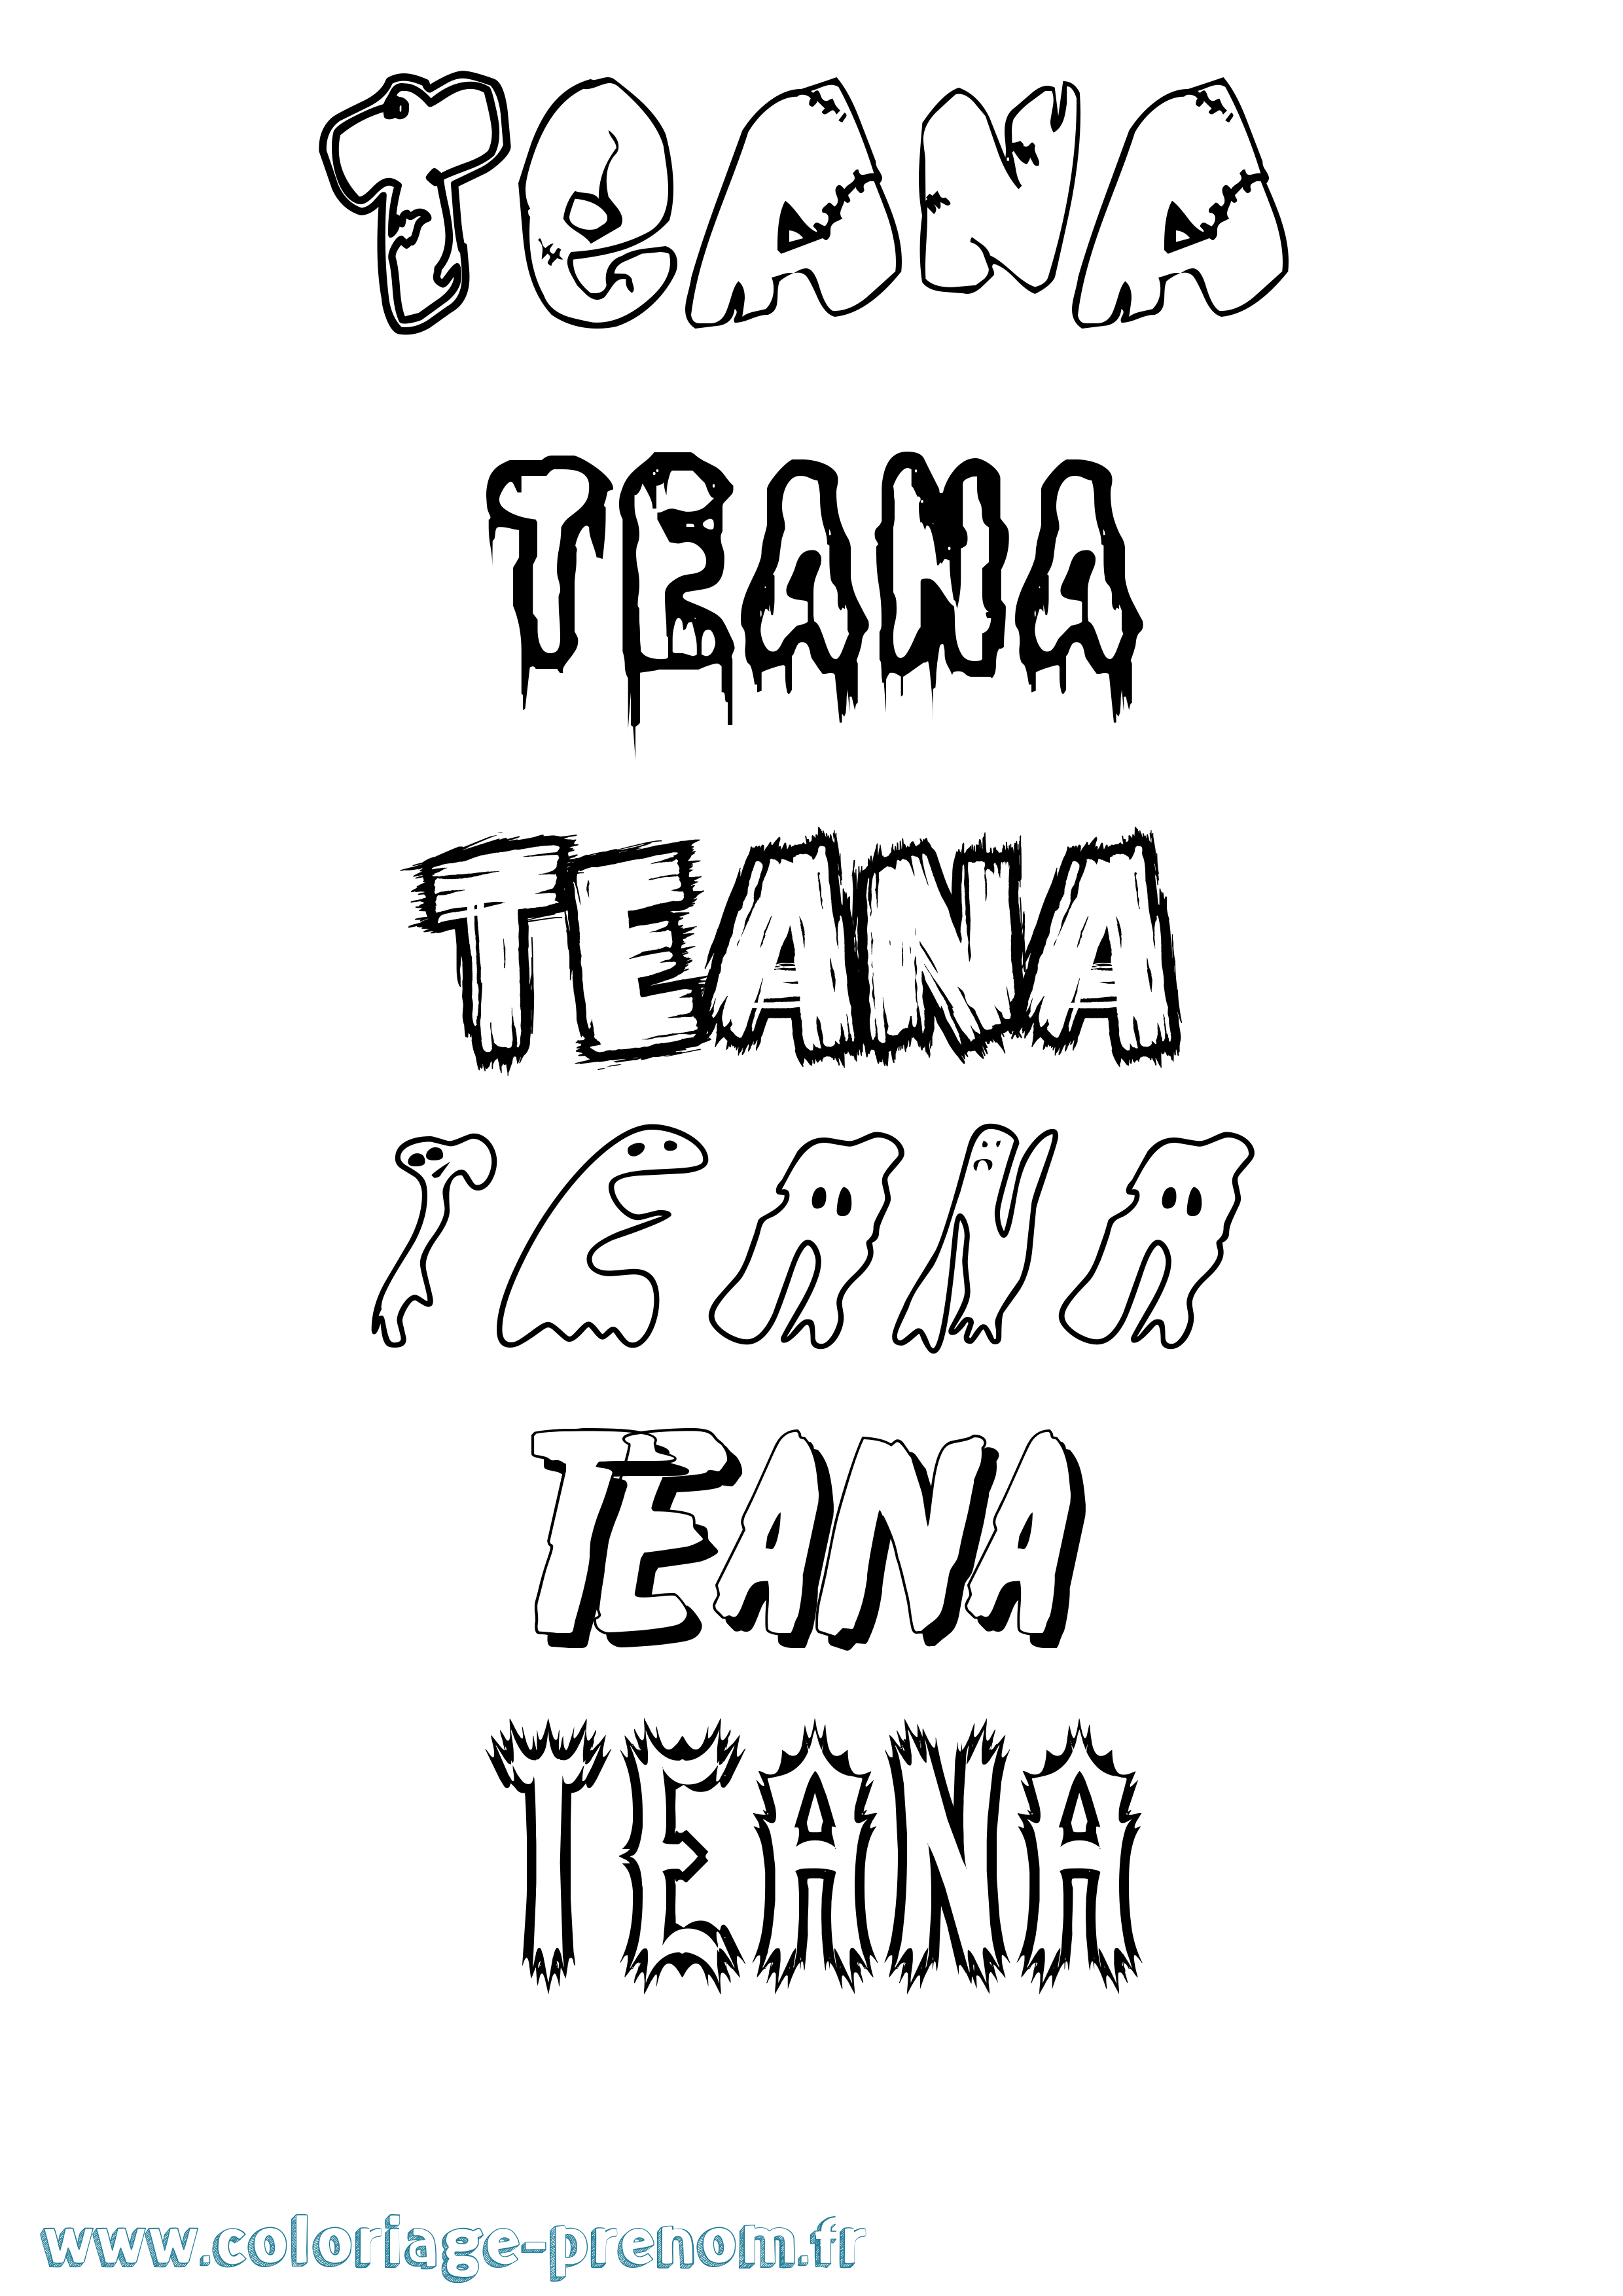 Coloriage prénom Teana Frisson